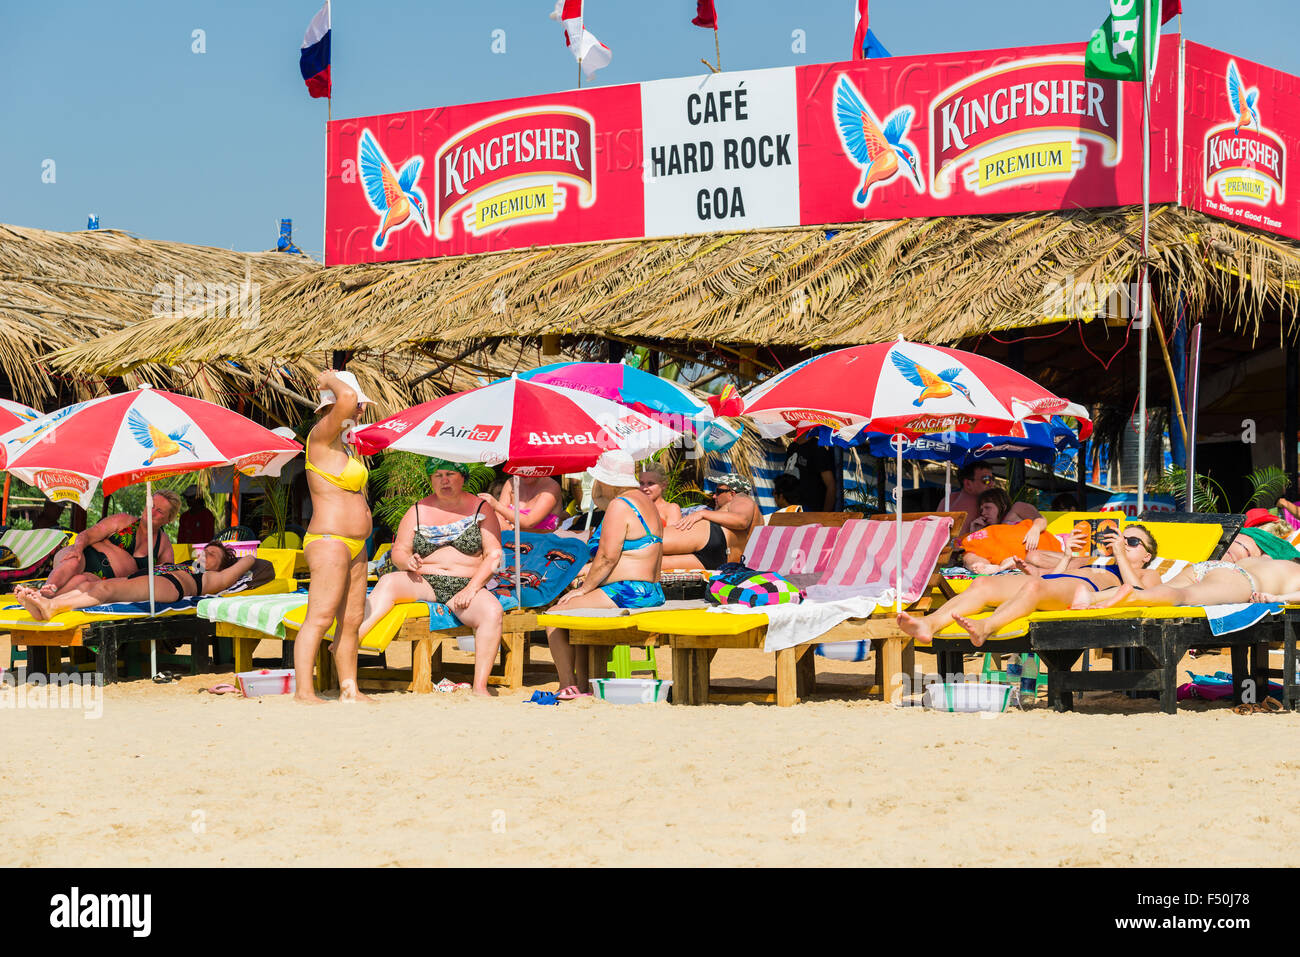 Une cabane nommée 'Hard rock café goa' et certains touristes à plage de Calangute Banque D'Images